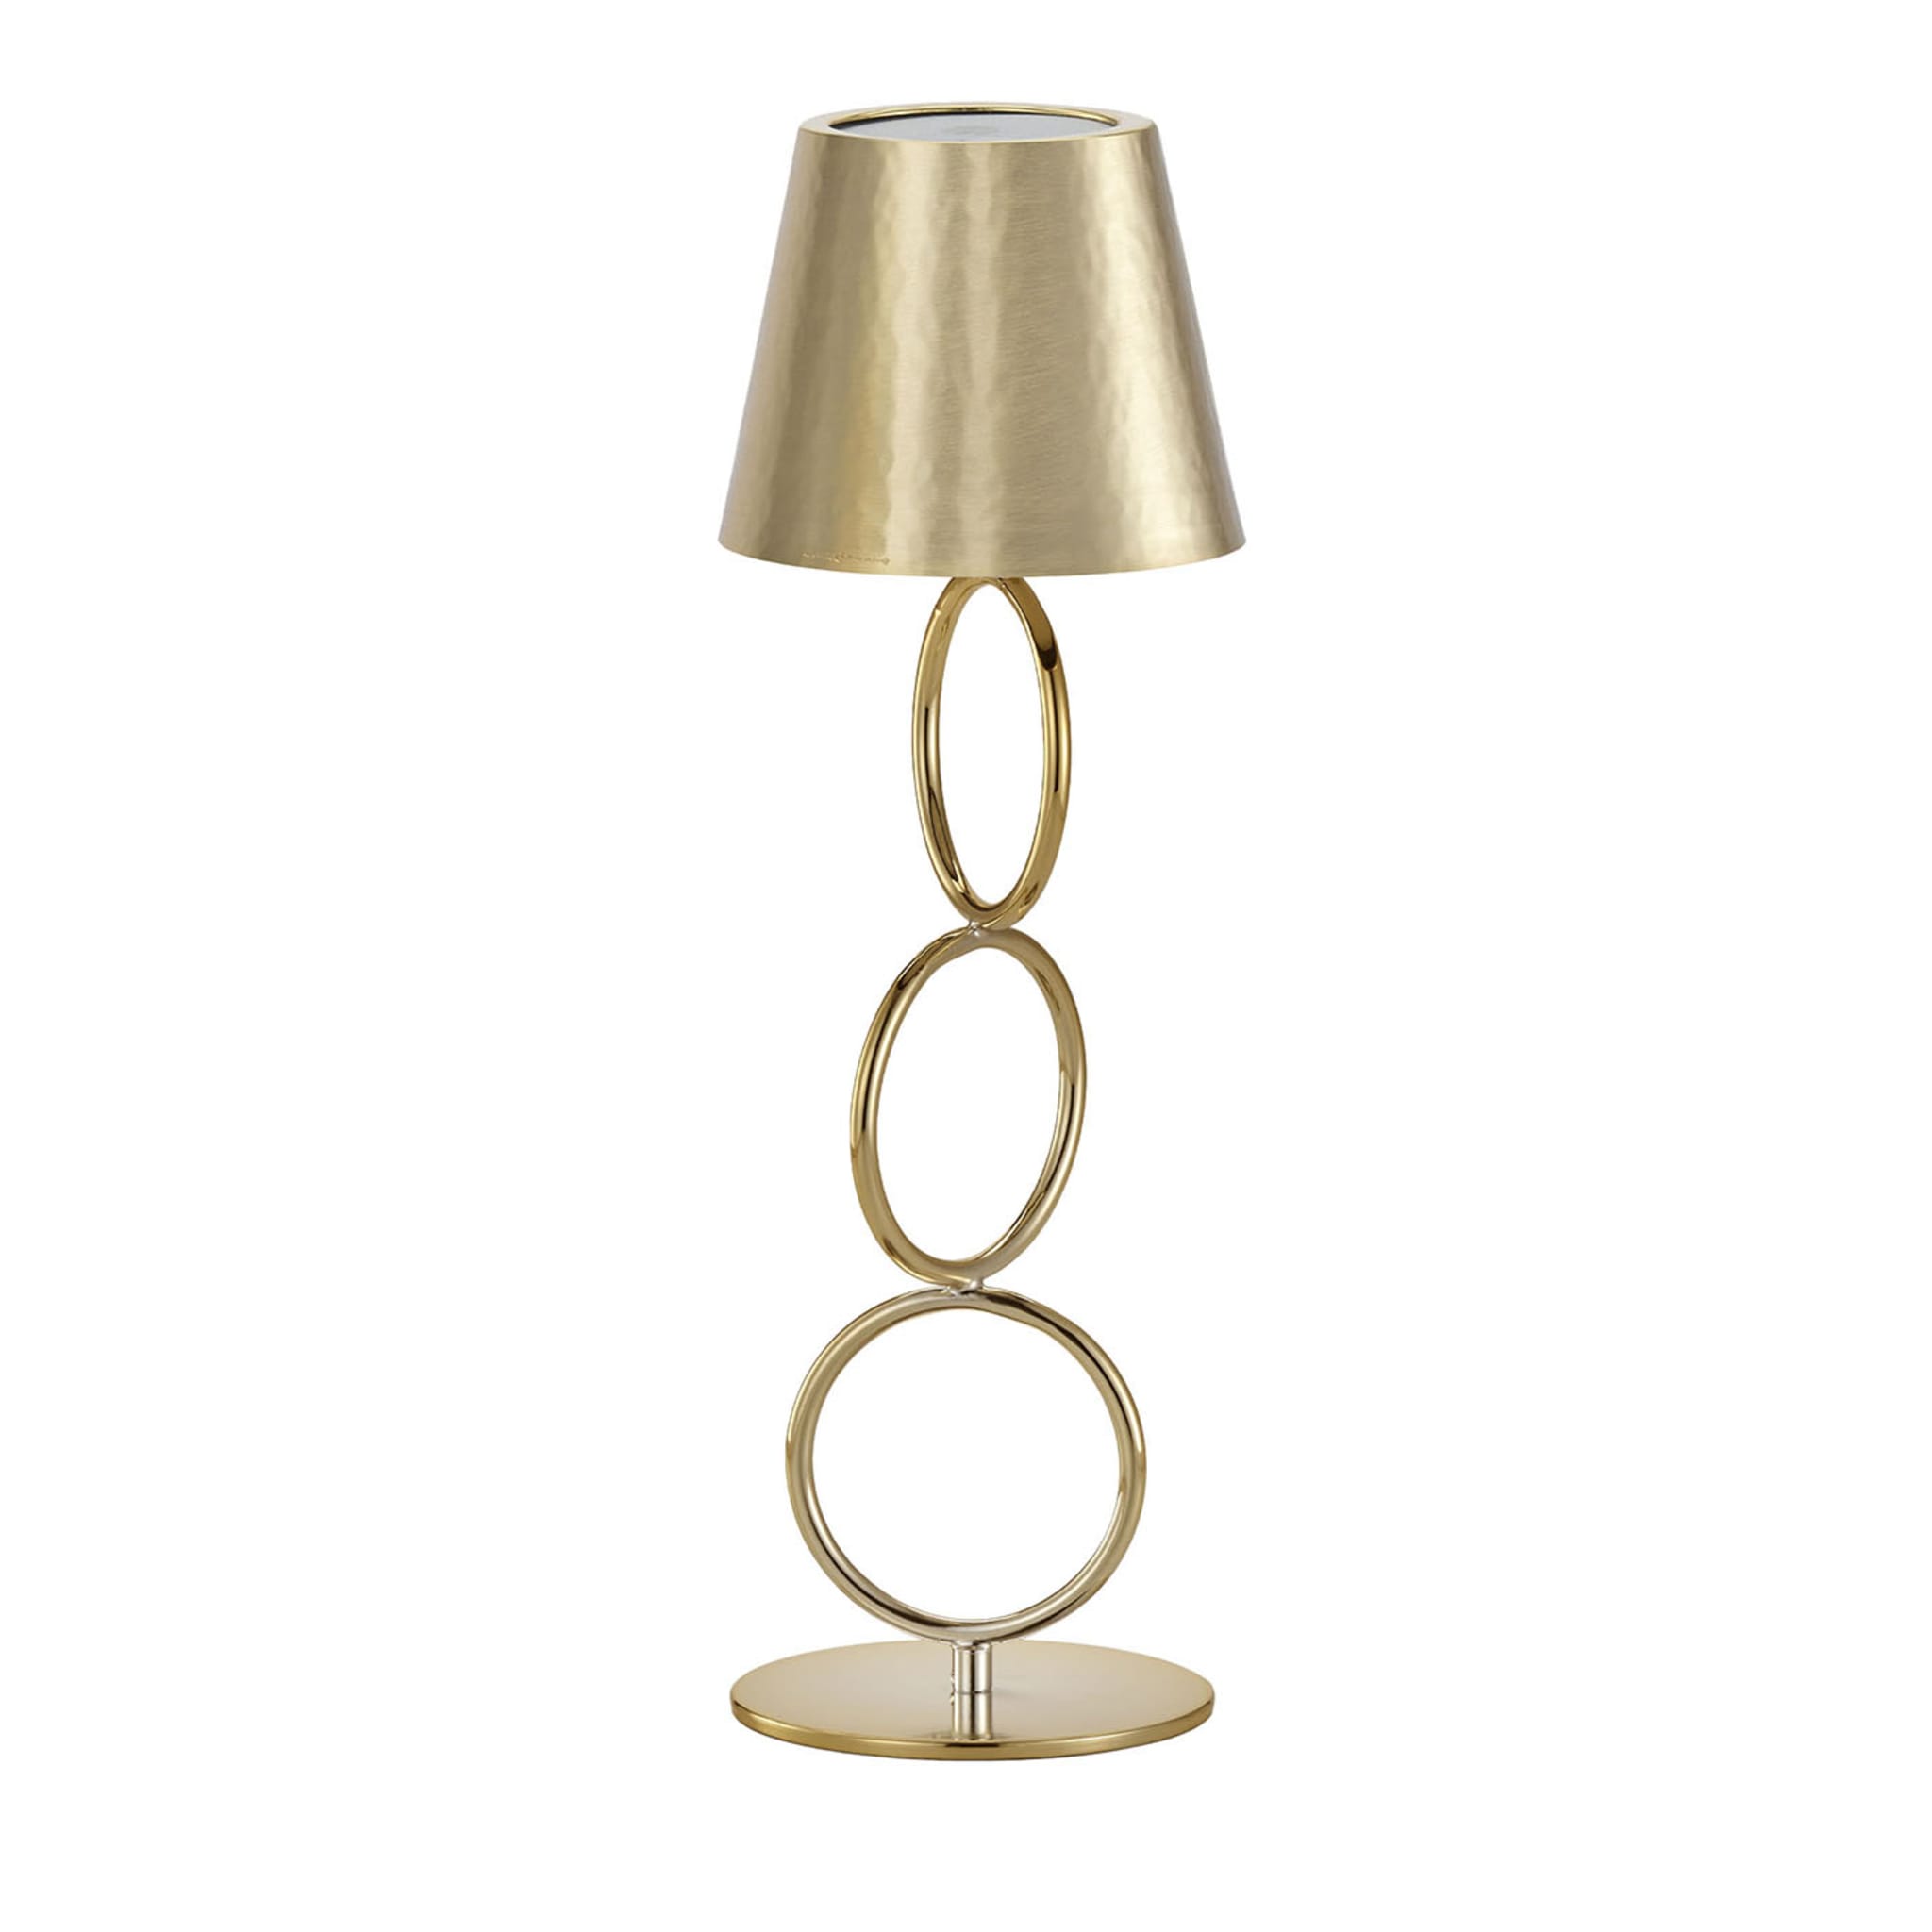 Golden Lamp #1 by Itamar Harari - Main view